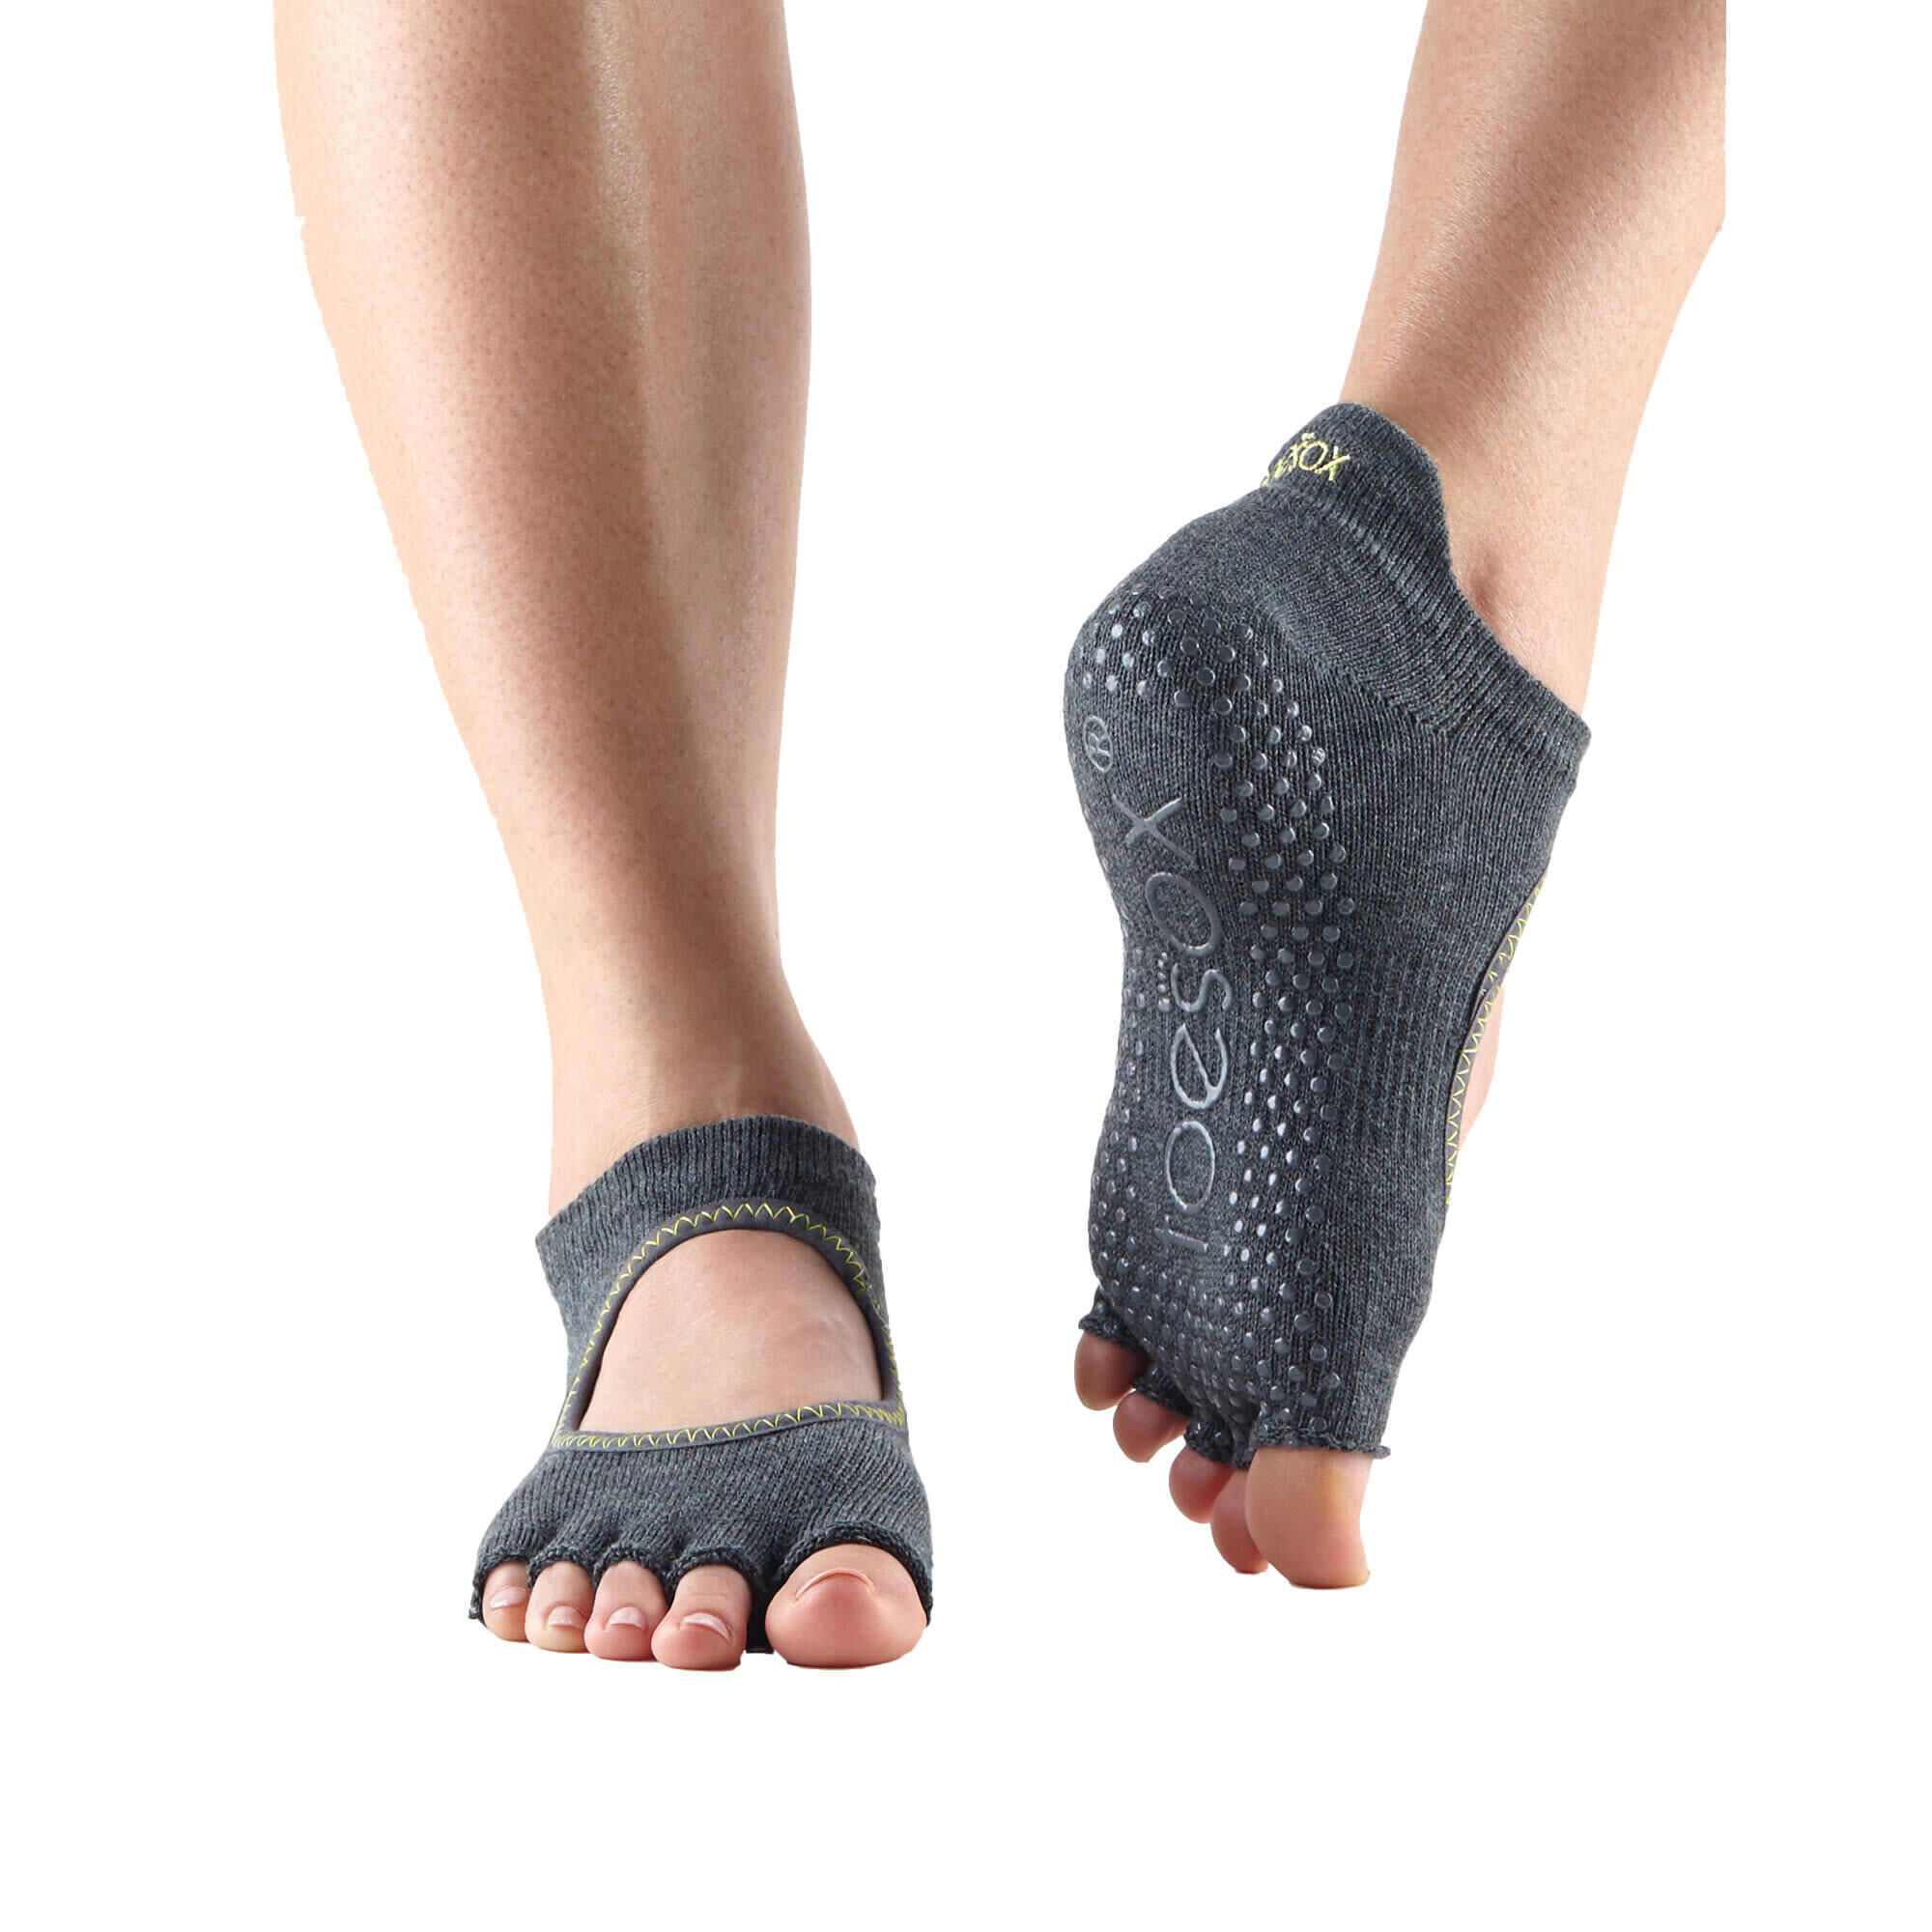 FITNESS-MAD Womens/Ladies Bellarina Gripped Half Toe Socks (Charcoal)